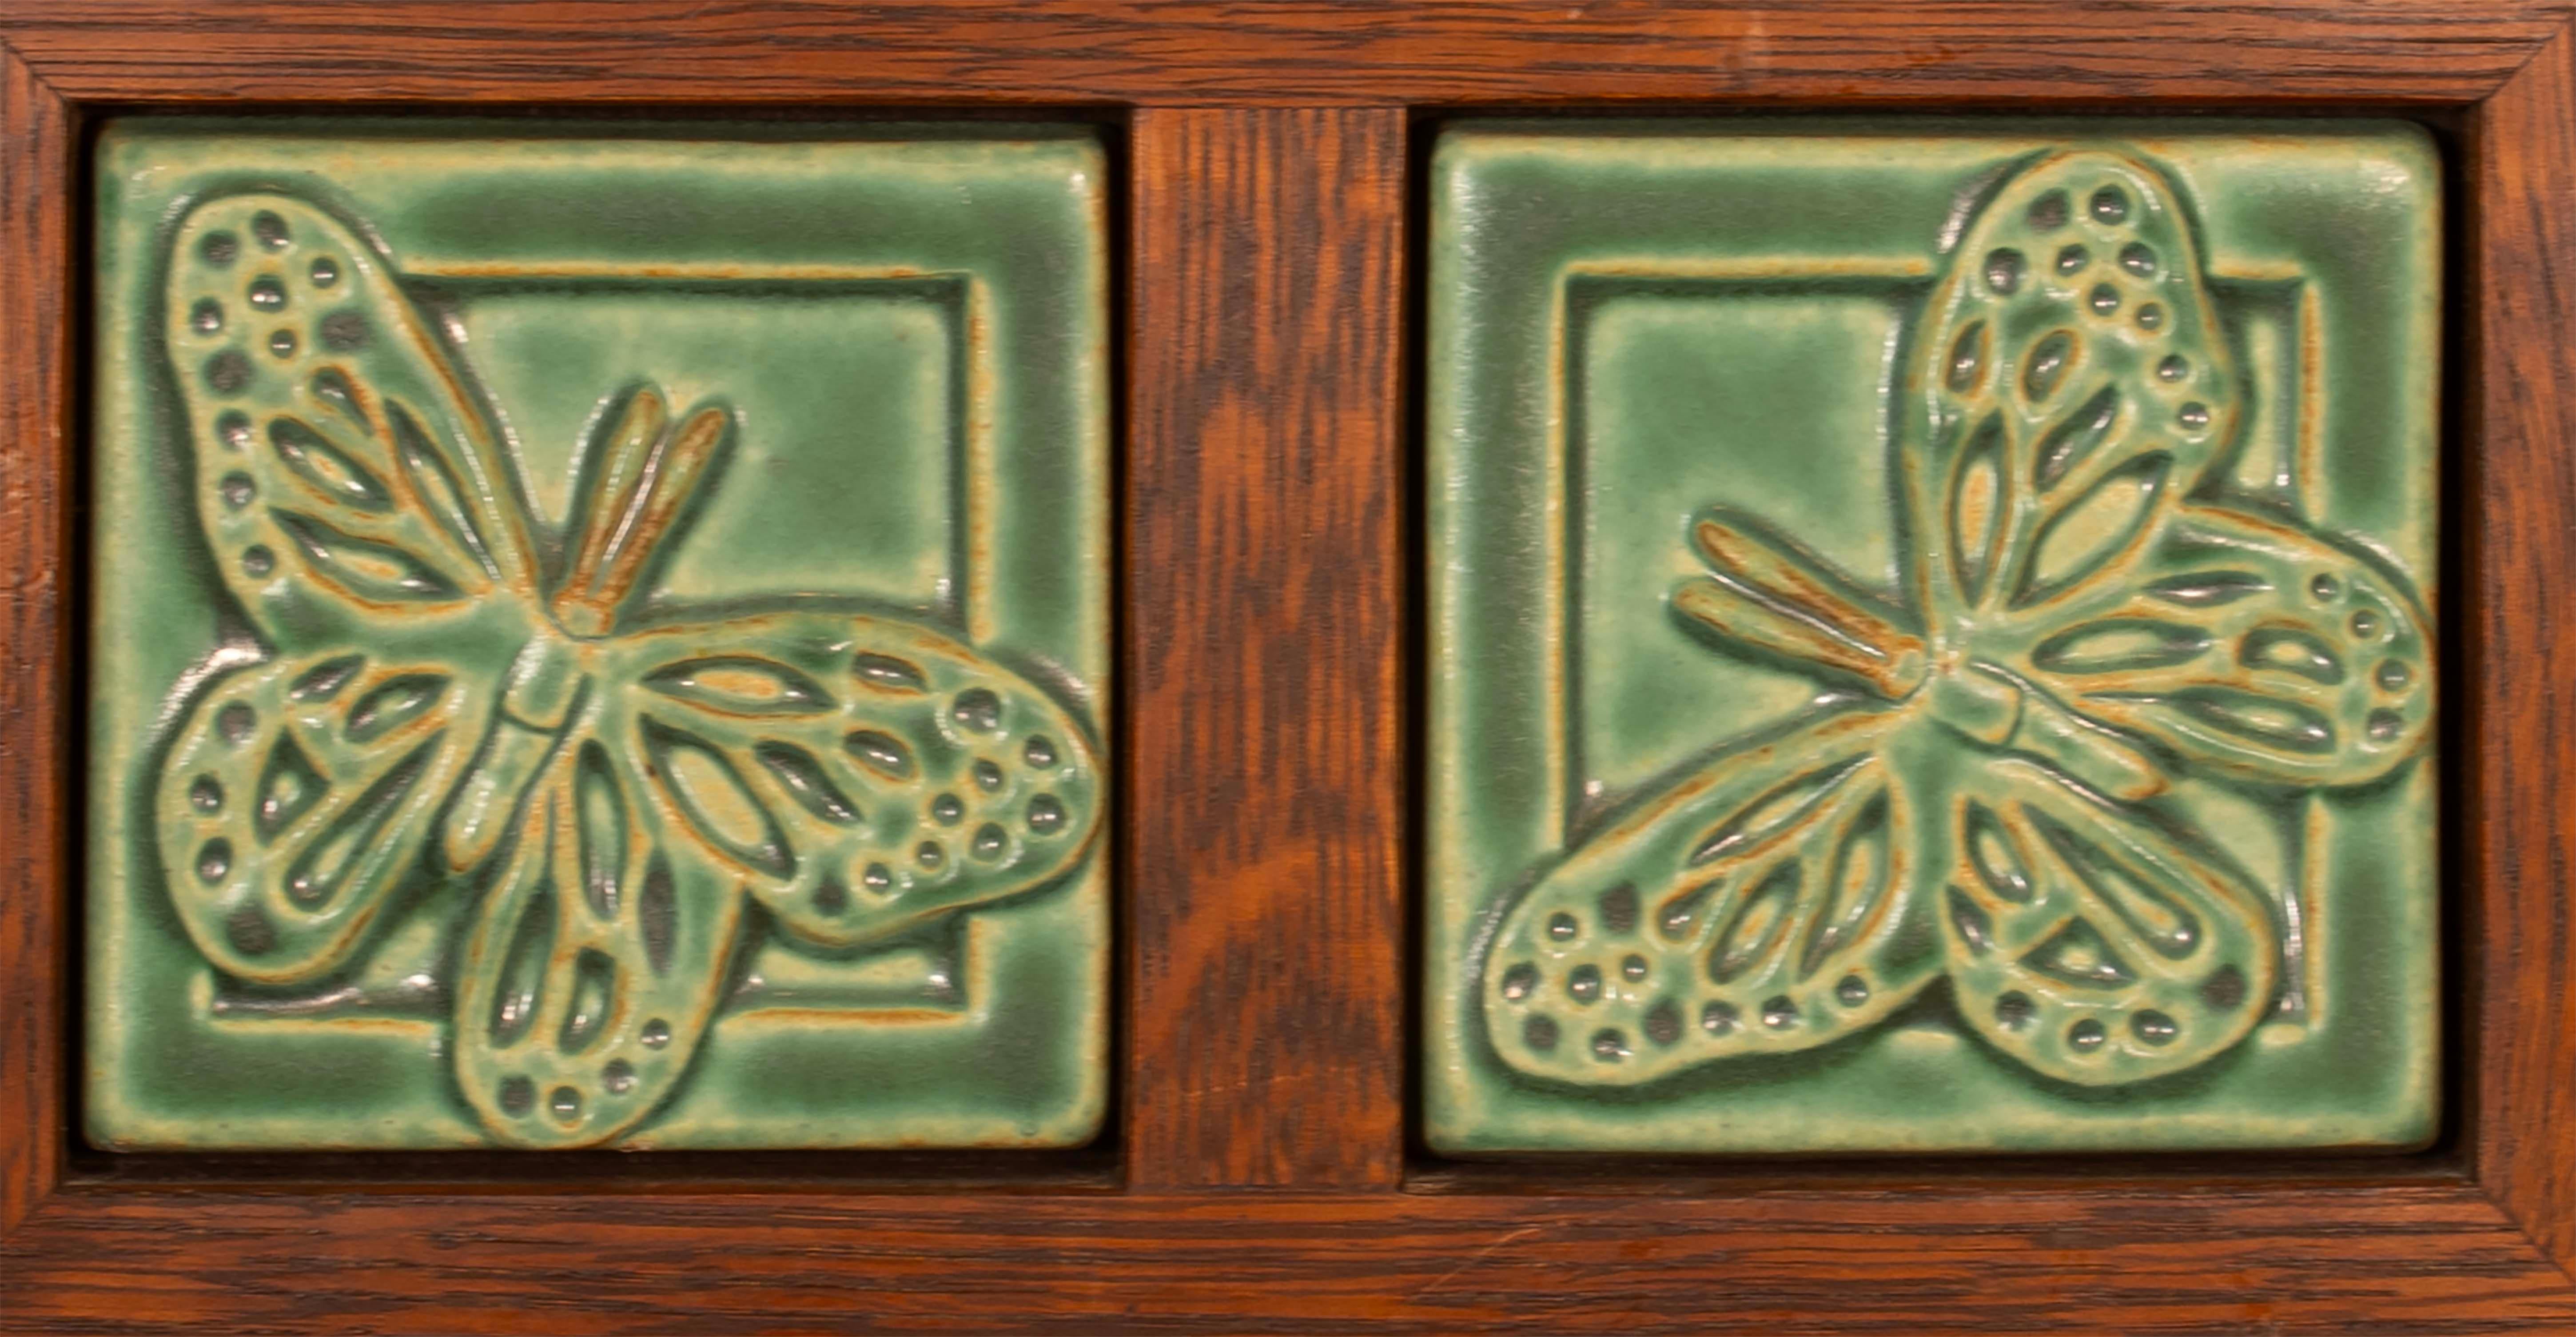 Verleihen Sie Ihrem Zuhause einen Hauch von Charme mit diesen wunderschön gearbeiteten gerahmten Pewabic Detroit Schmetterlingsfliesen. Die quadratischen Fliesen haben eine atemberaubende grüne Farbe, die jeden Raum beleben wird. Ein schlichtes,